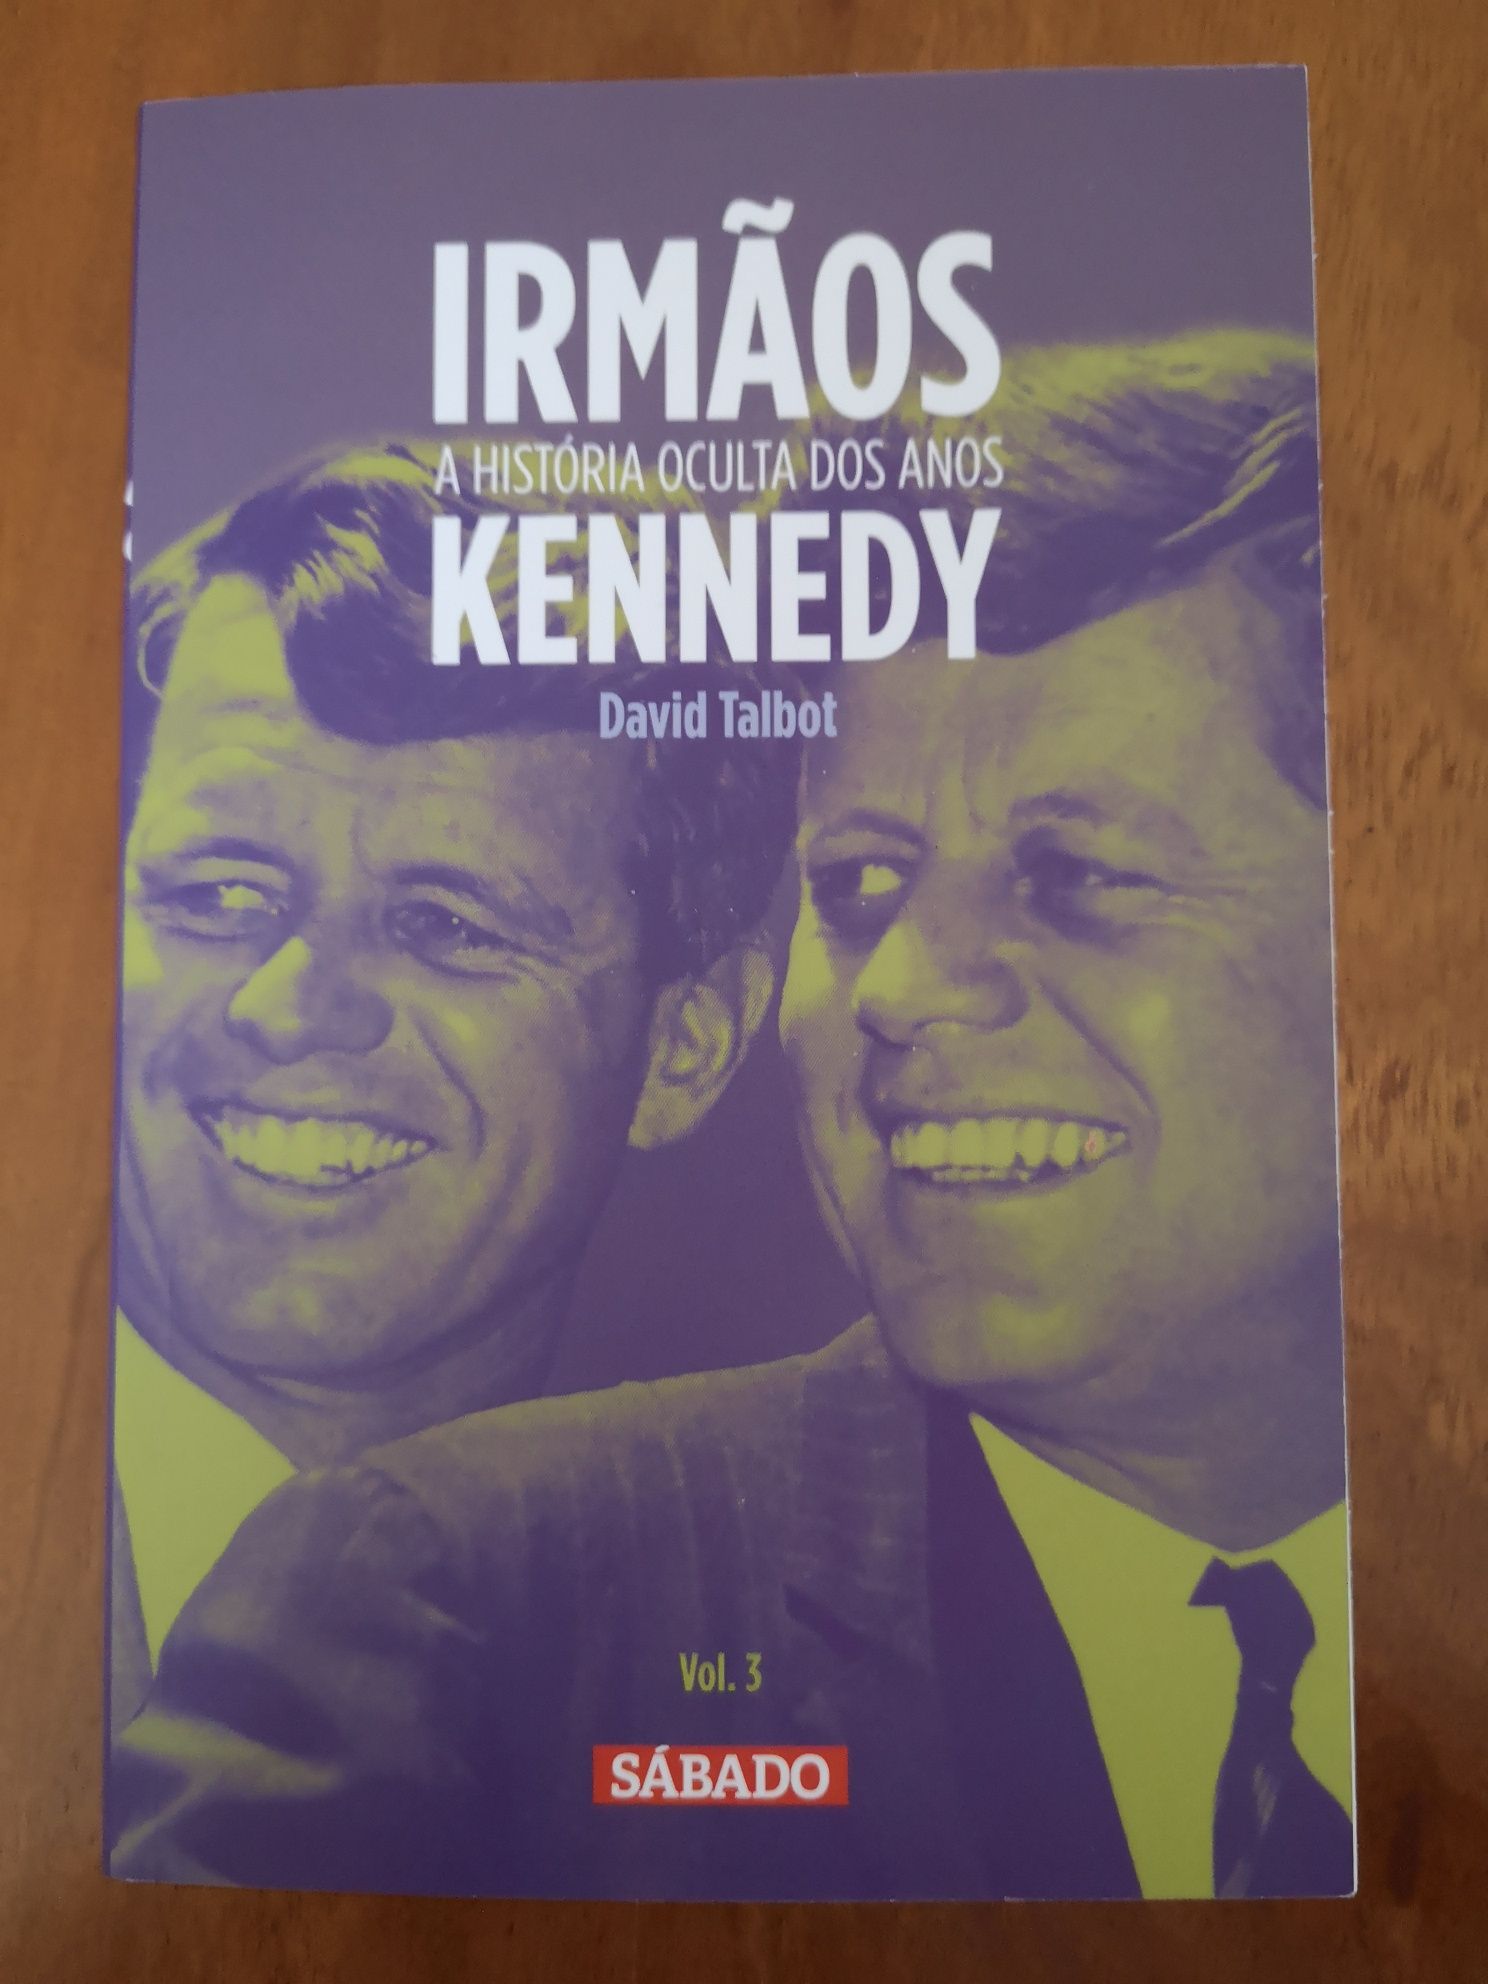 Livro Irmãos Kennedy